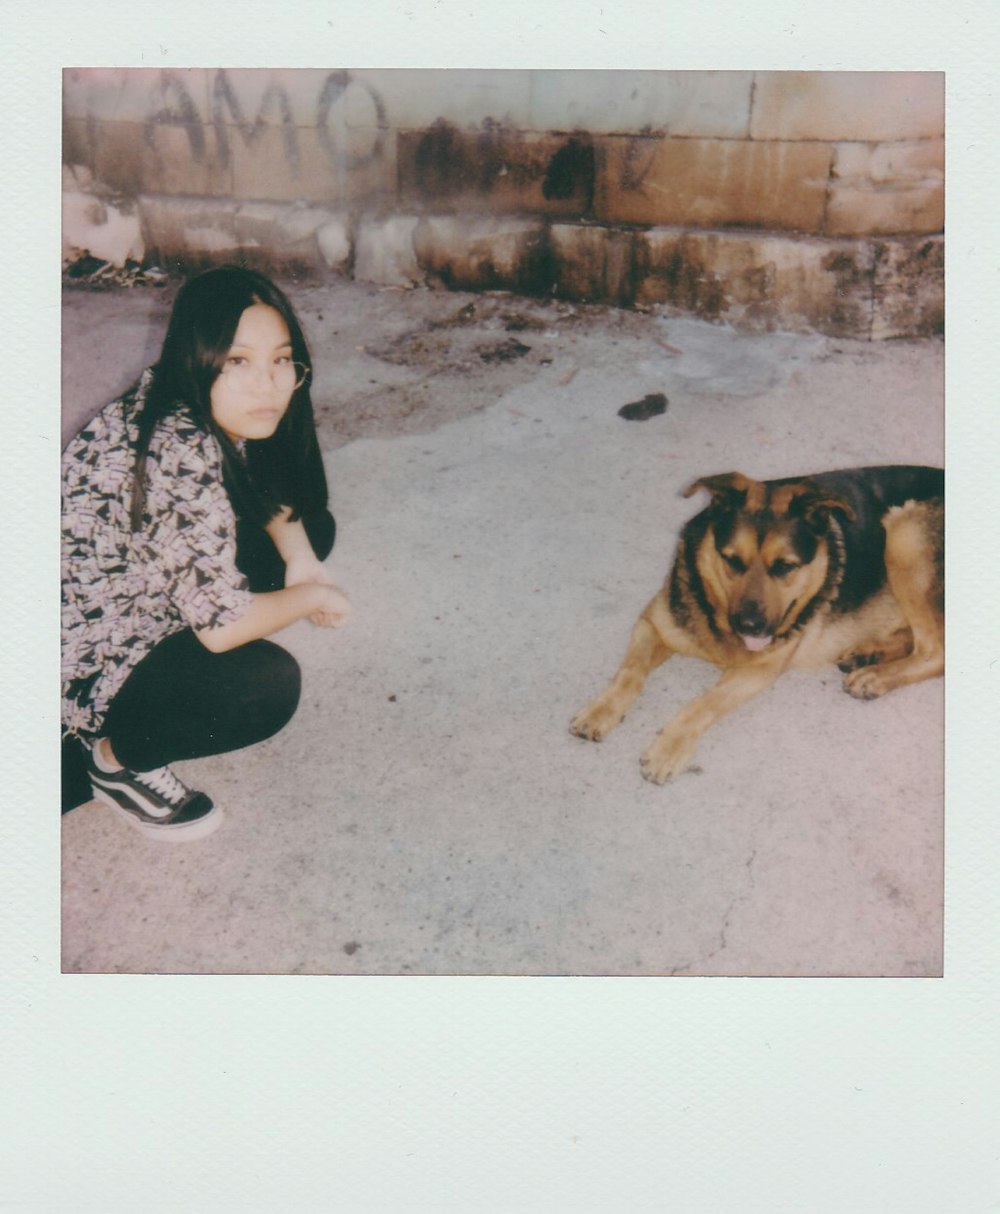 Una donna inginocchiata accanto a un cane